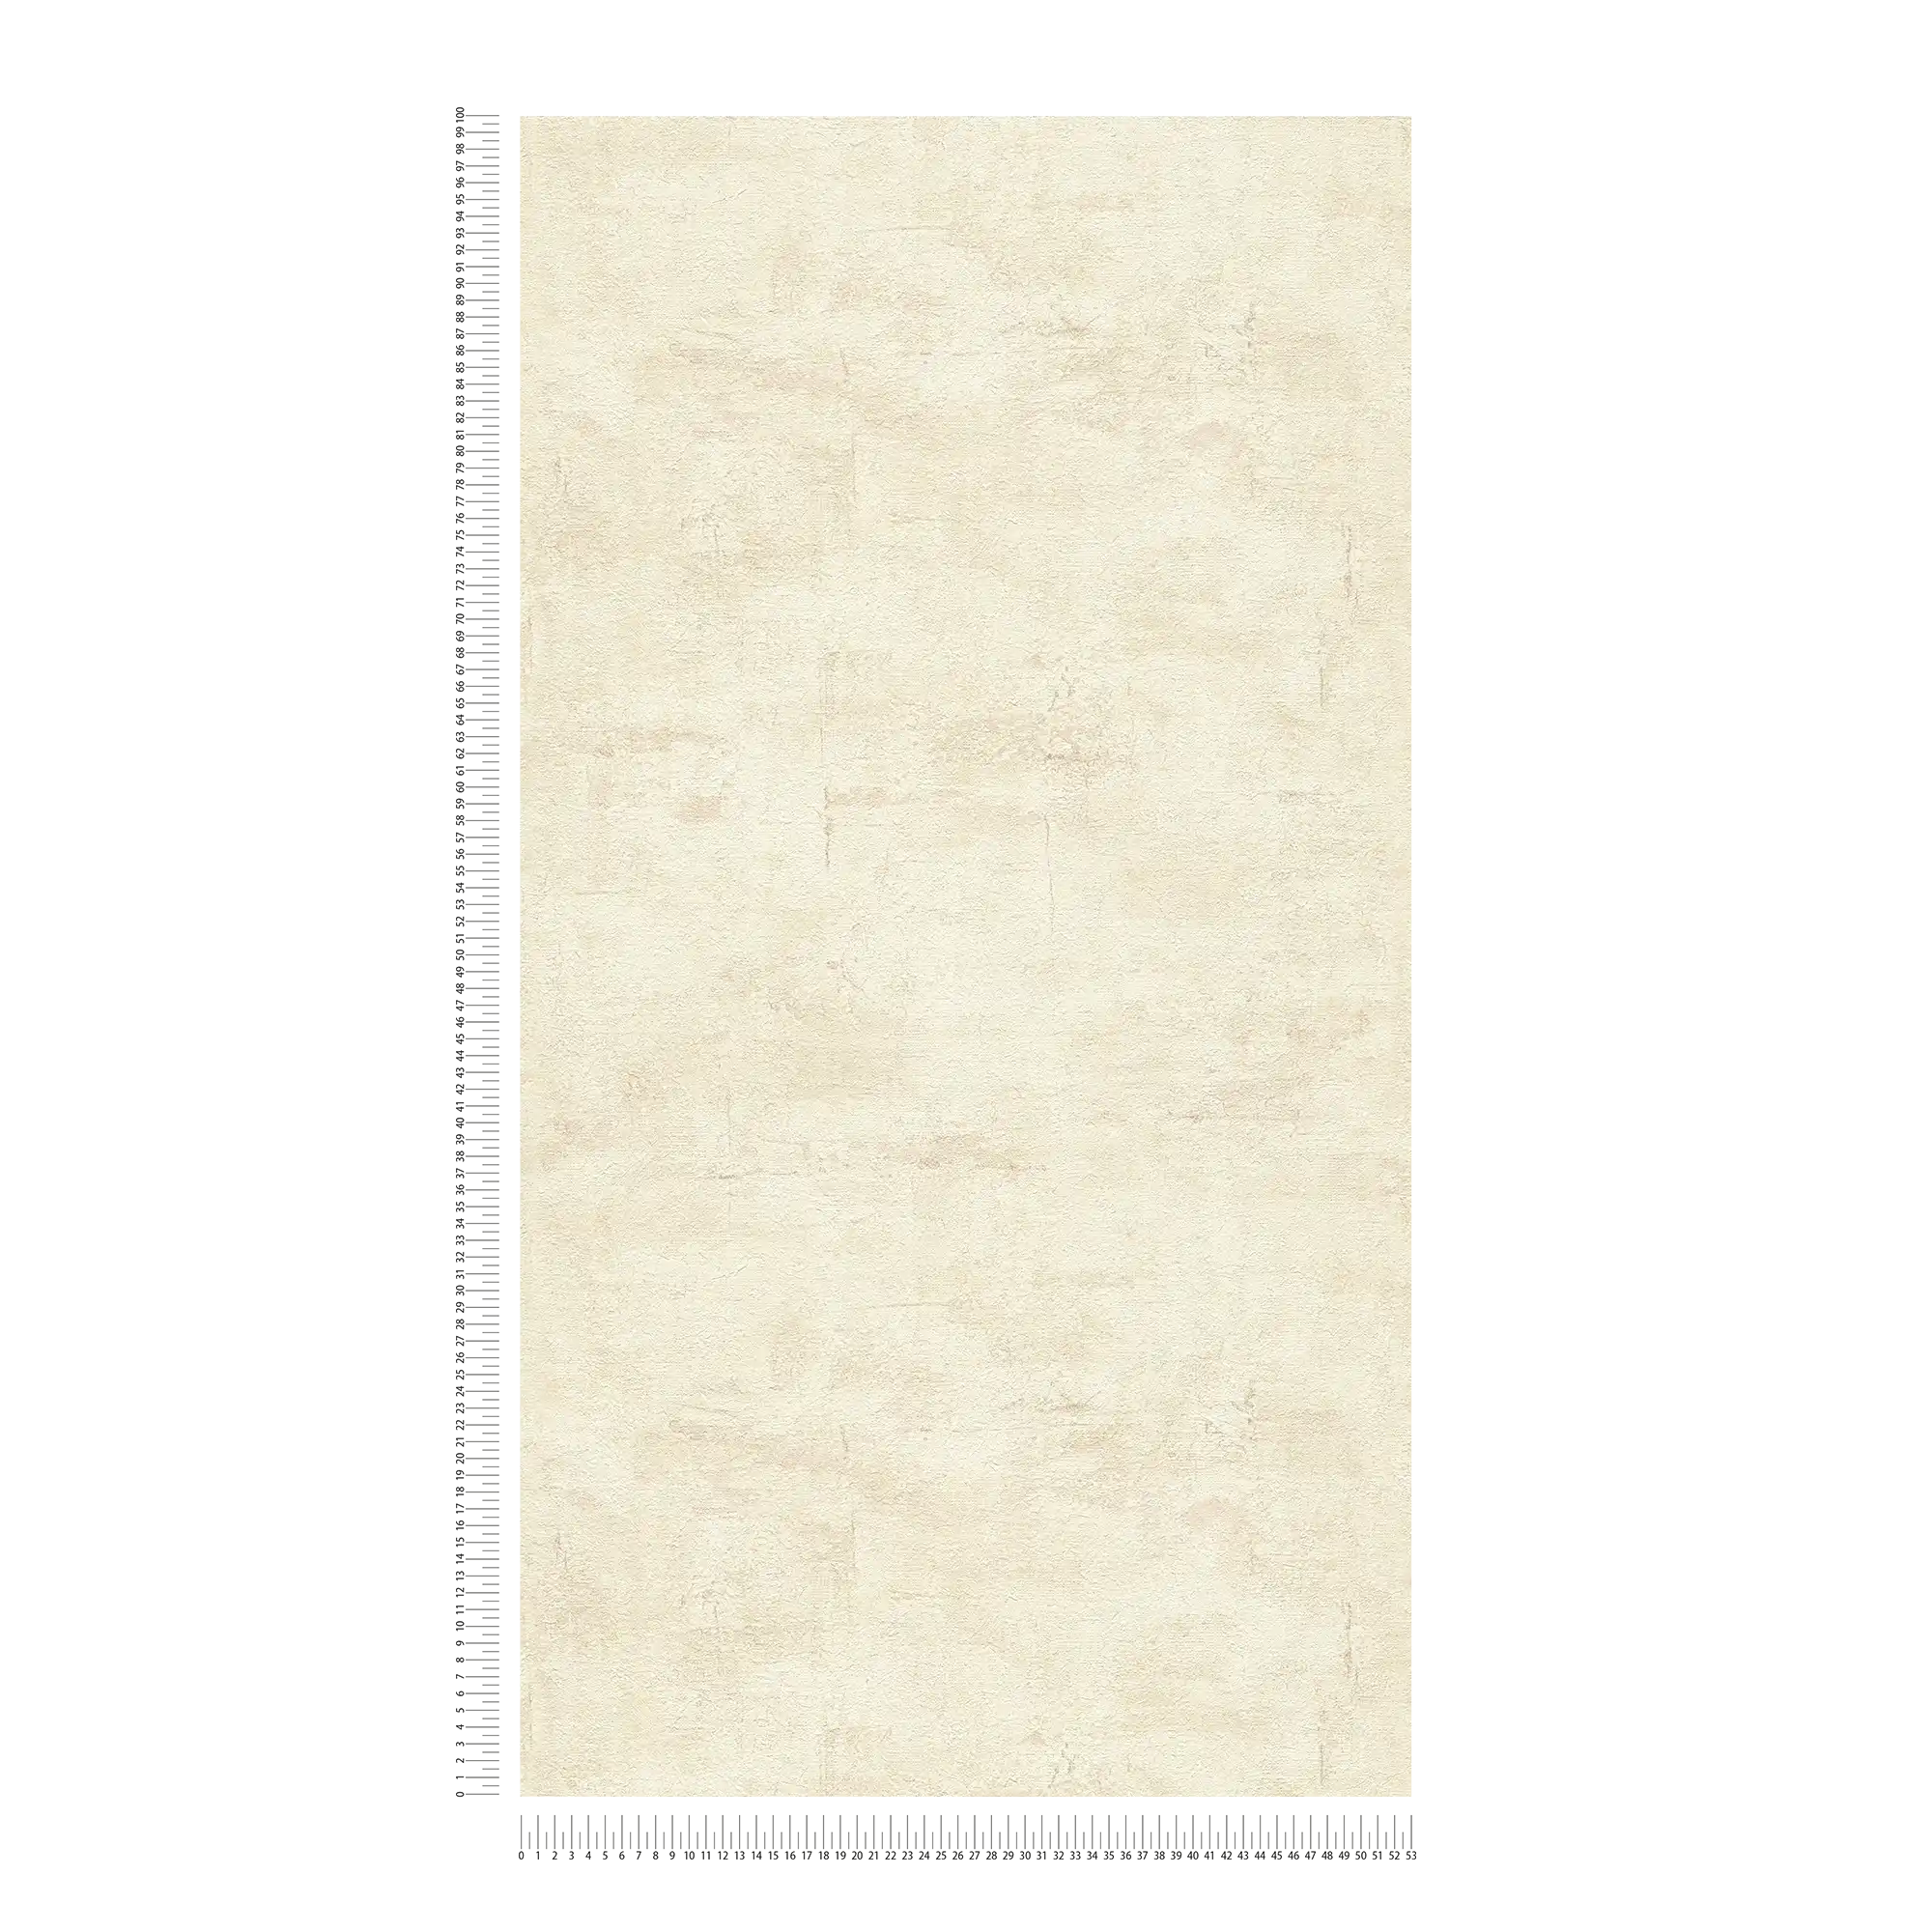             Papel pintado texturizado con aspecto de yeso beige claro - beige, marrón
        